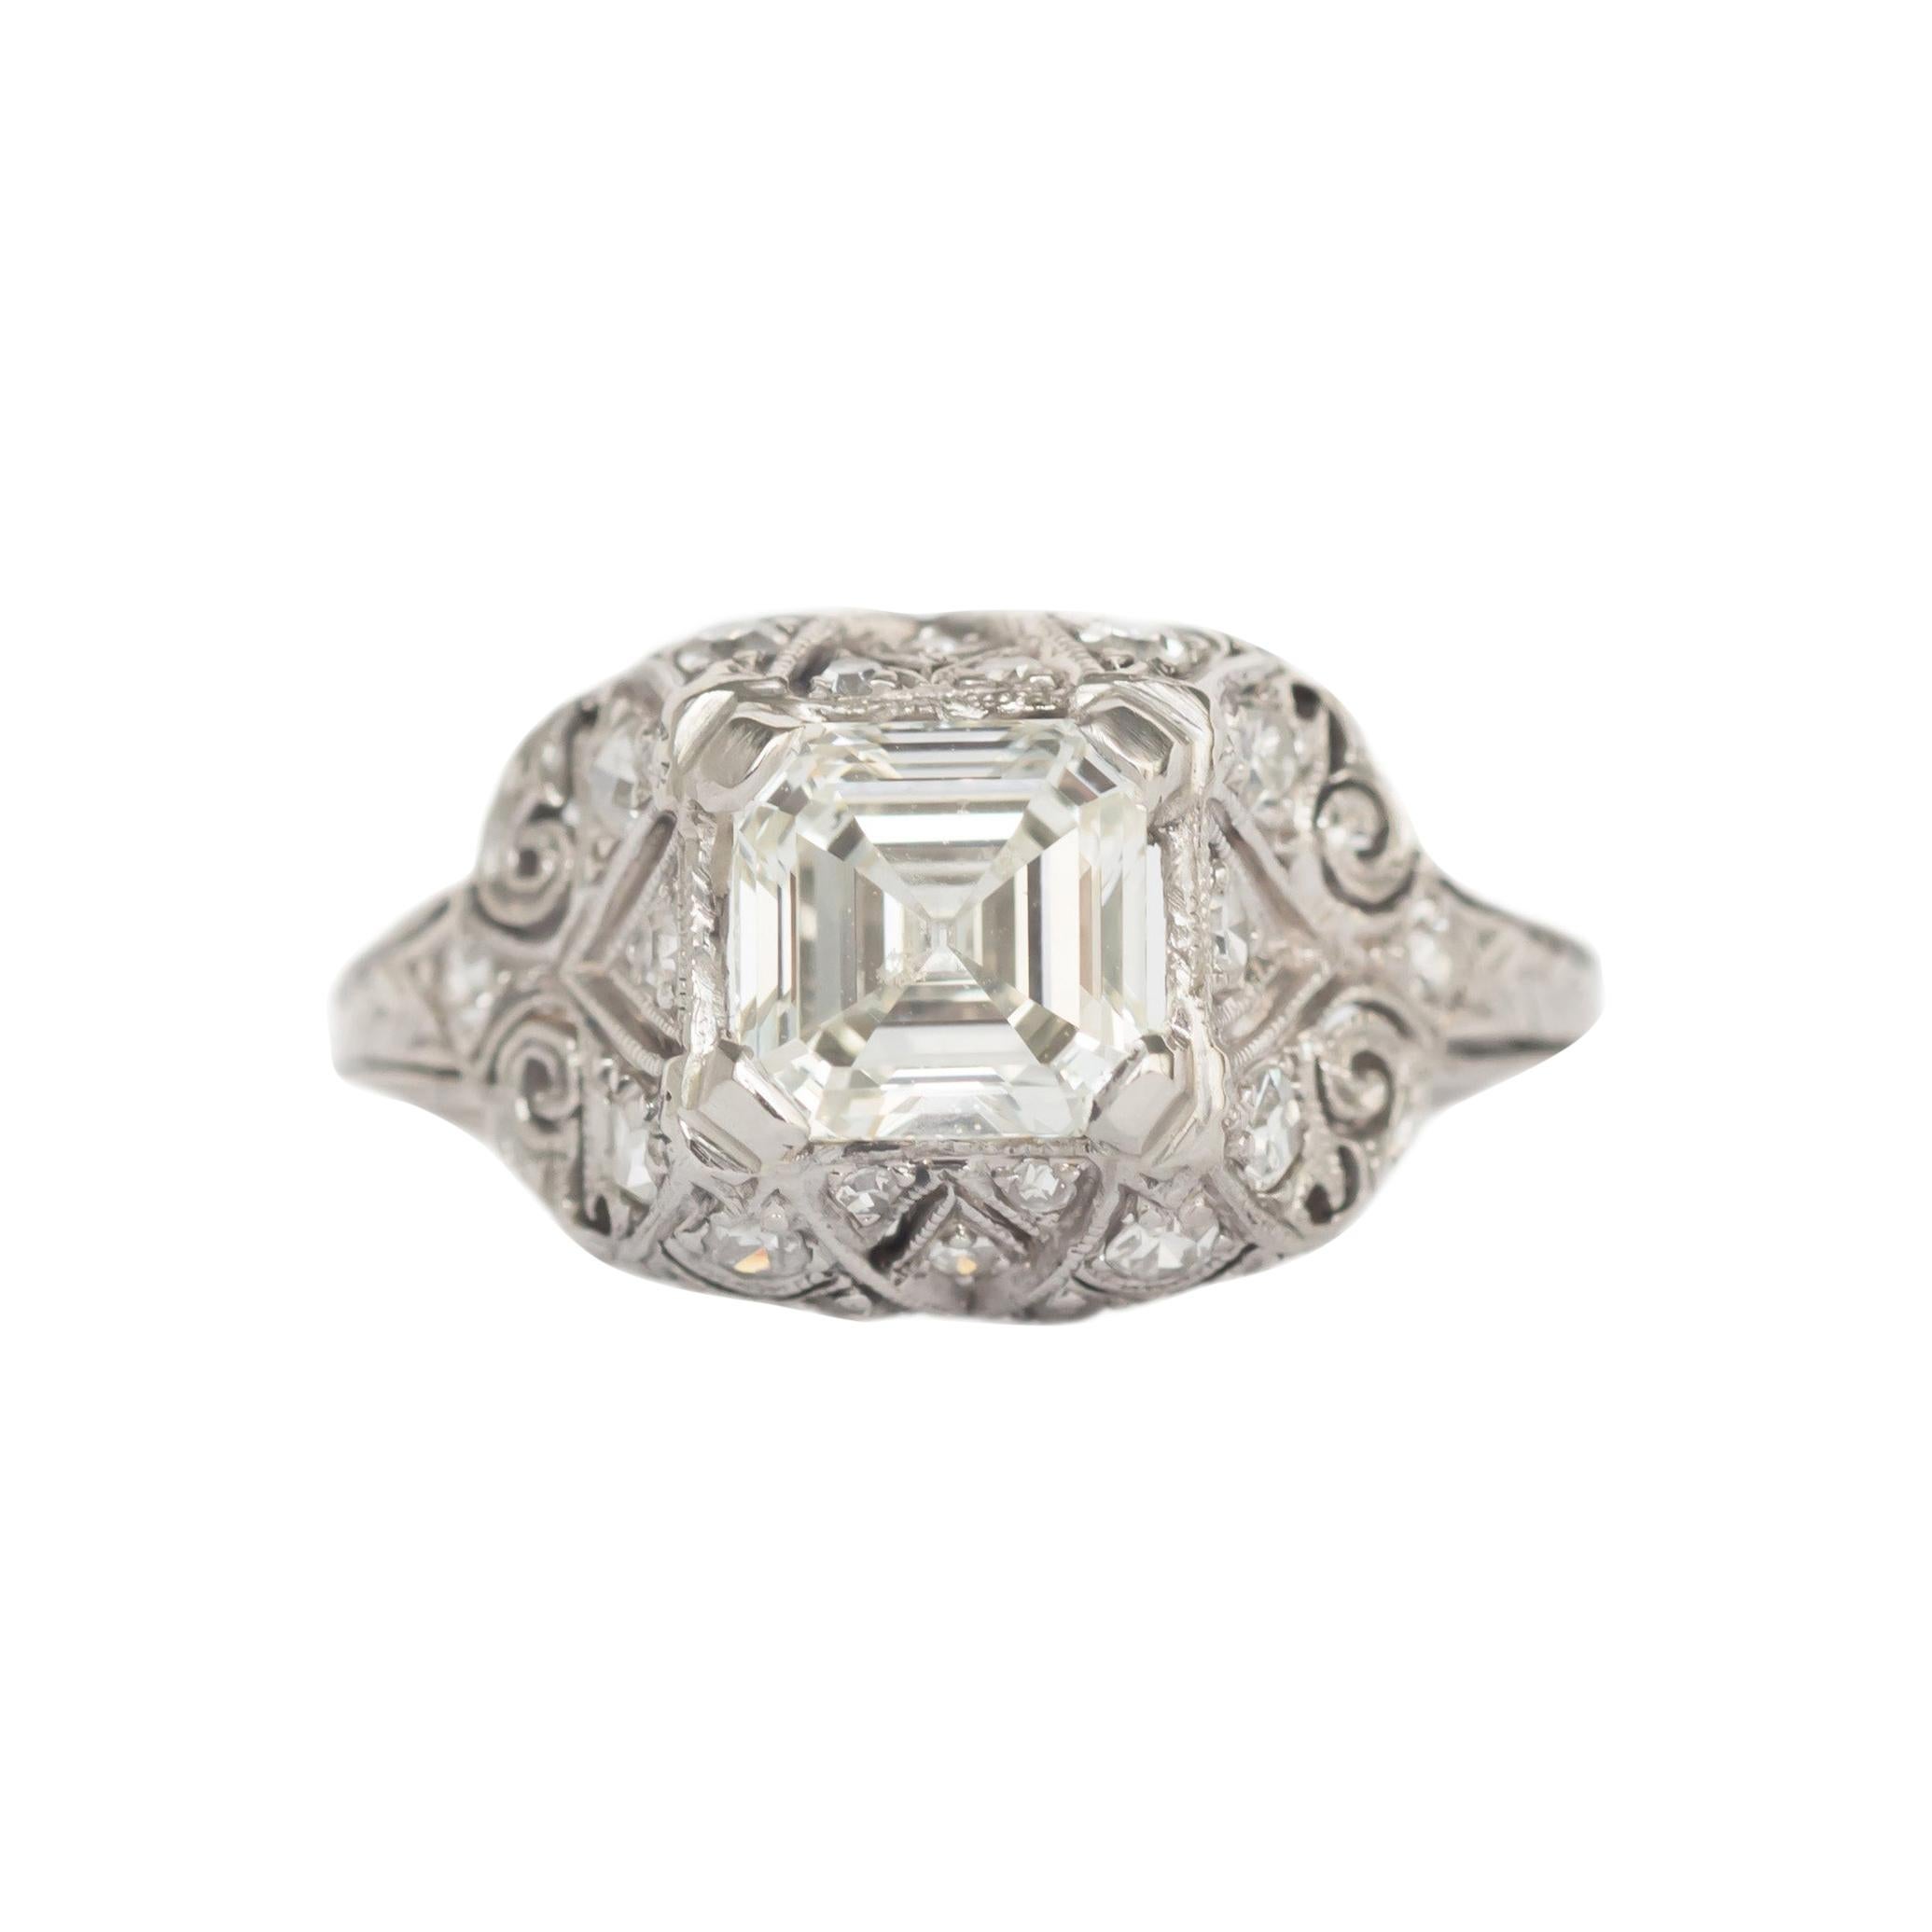 GIA Certified 1.49 Carat Diamond Platinum Engagement Ring